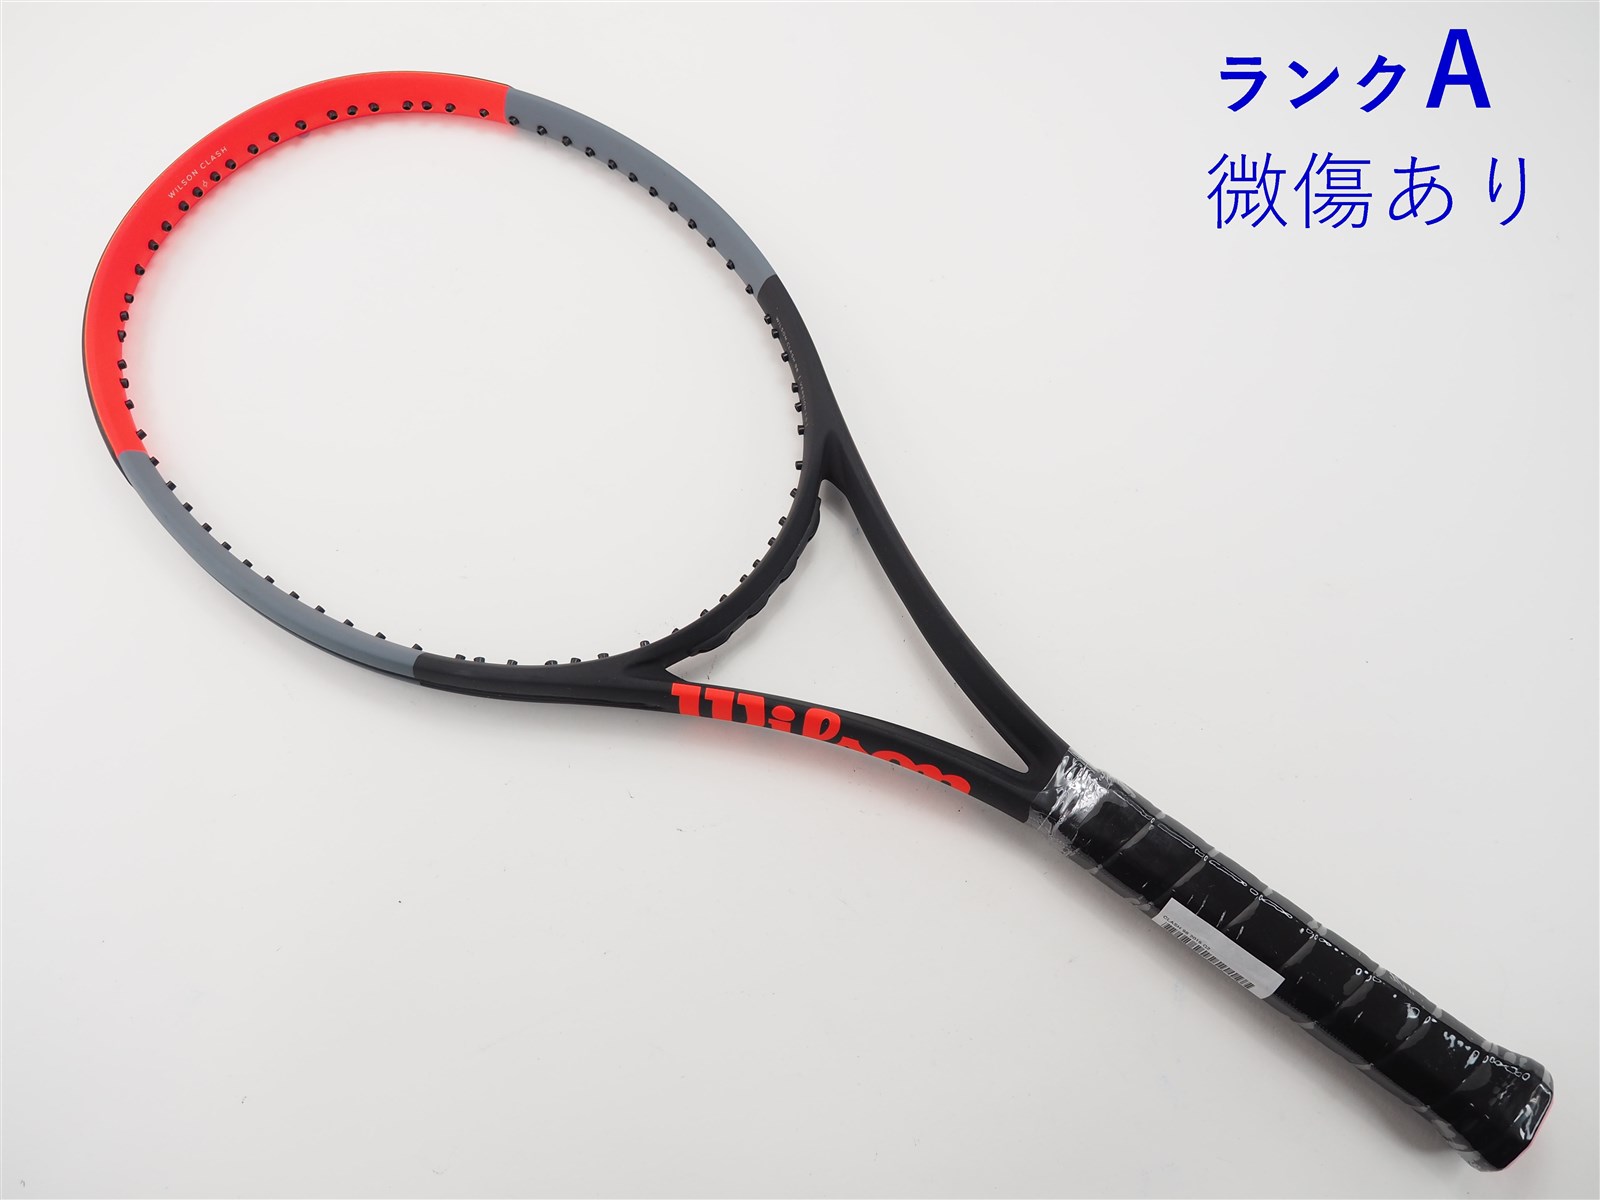 テニスラケット ウィルソン クラッシュ98 2019年モデル (G2)WILSON